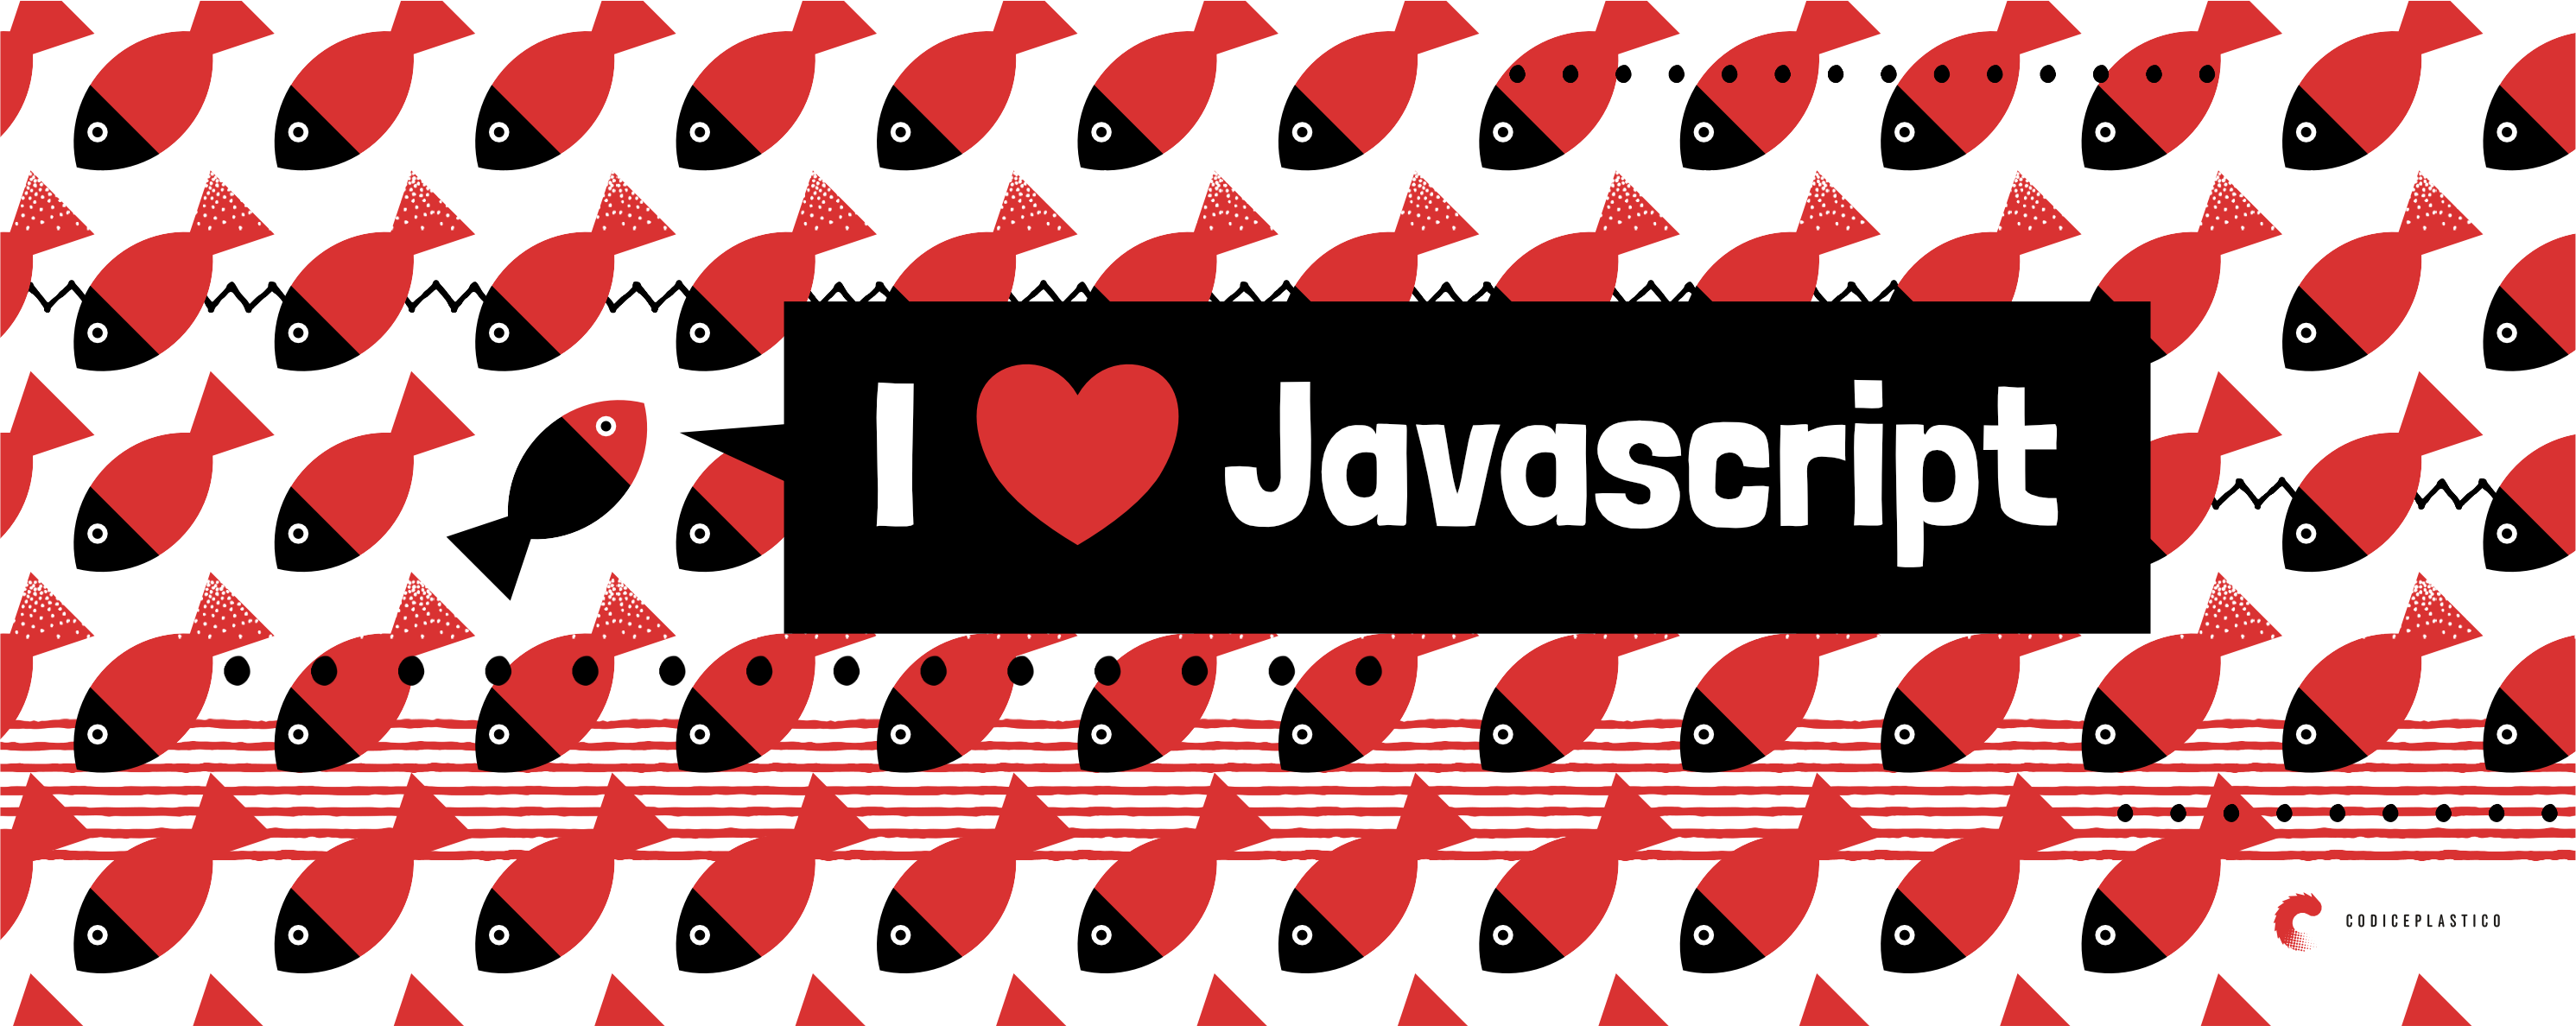 I love Javascript